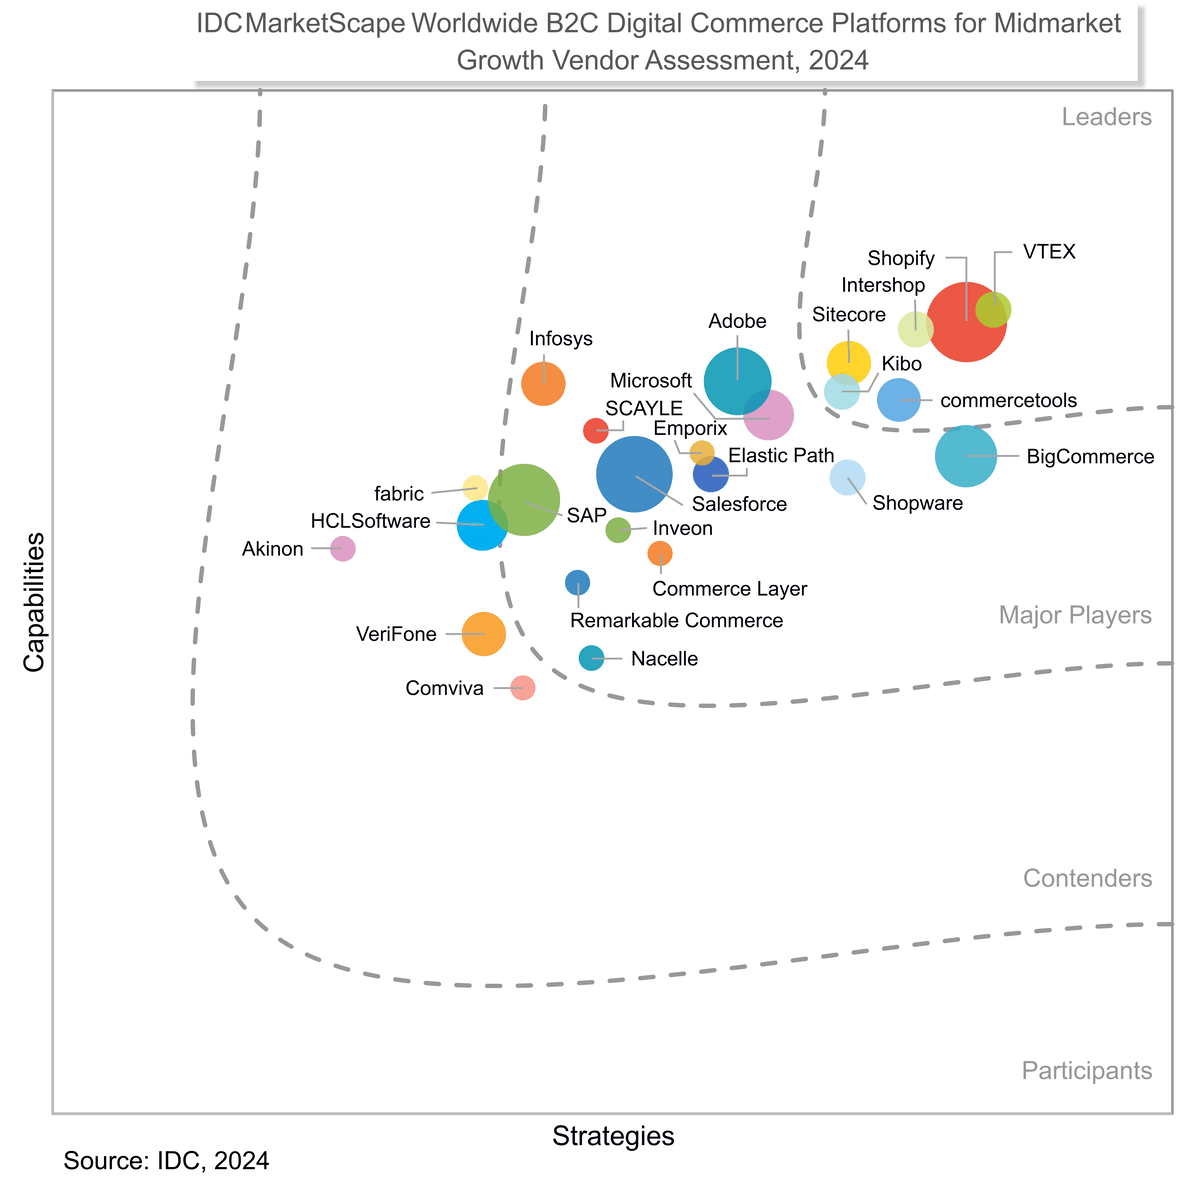 图表显示了 Shopify 在《2024 IDC MarketScape: Worldwide B2C Digital Commerce Platforms for Midmarket Growth》（2024 年 IDC MarketScape：面向中端市场增长的全球 B2C 数字商务平台）中作为领导者所在的位置